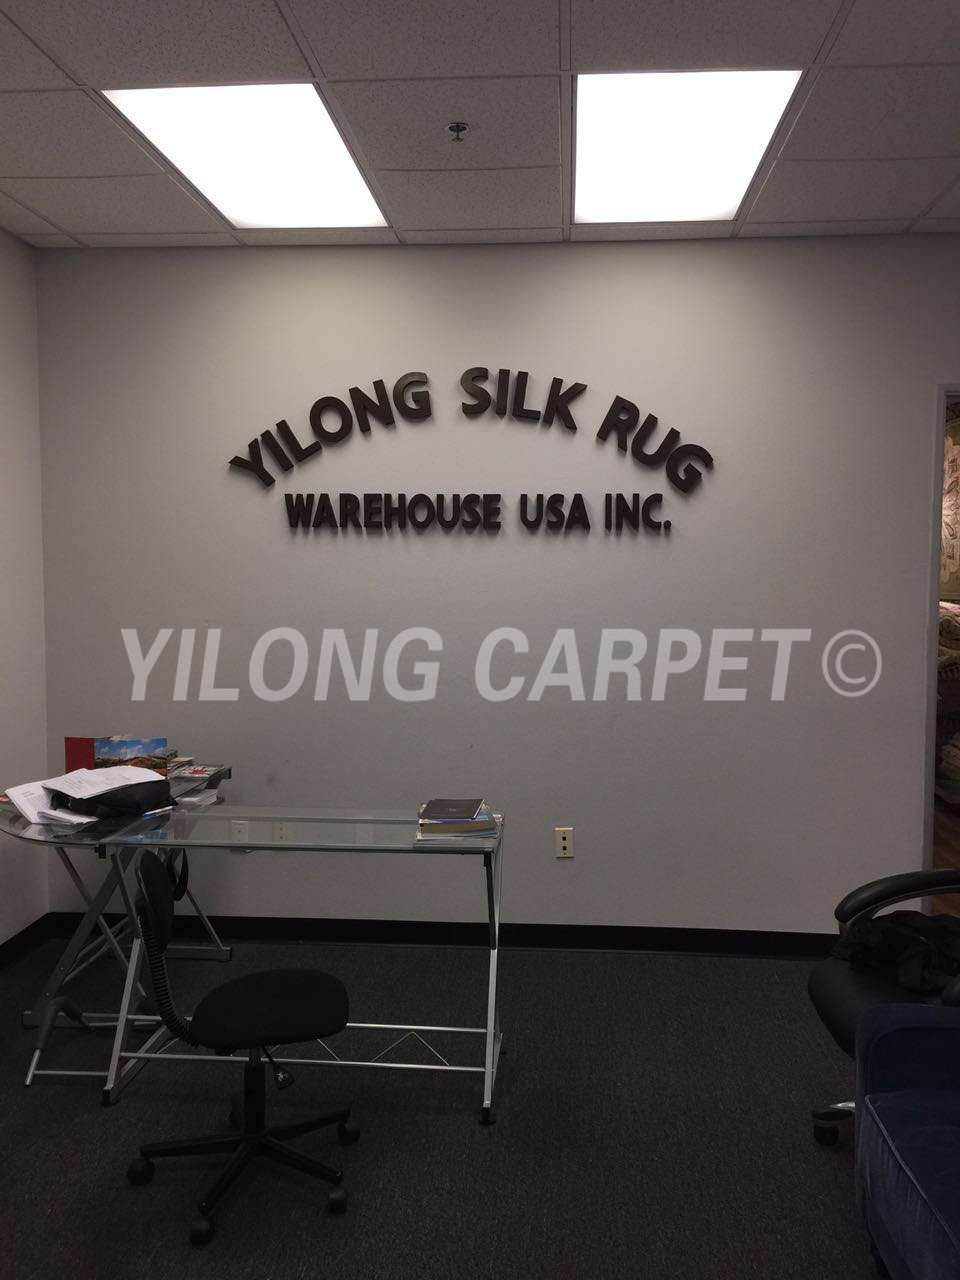 Yilong Carpet | 13971 Ramona Ave g, Chino, CA 91710, USA | Phone: 136 0398 9028